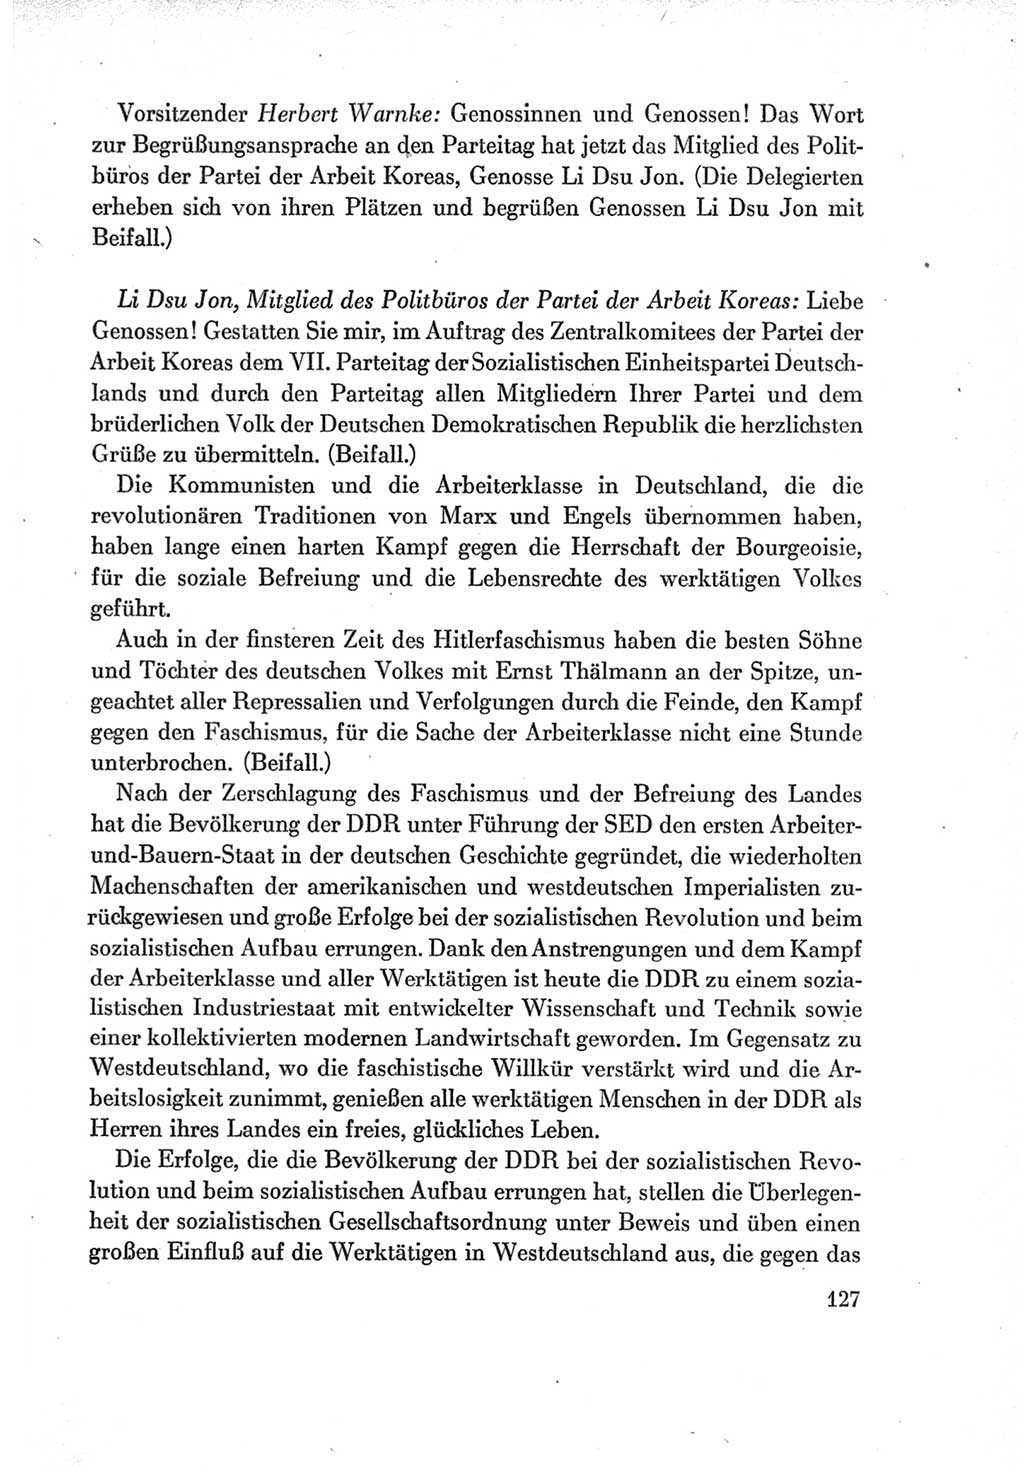 Protokoll der Verhandlungen des Ⅶ. Parteitages der Sozialistischen Einheitspartei Deutschlands (SED) [Deutsche Demokratische Republik (DDR)] 1967, Band Ⅱ, Seite 127 (Prot. Verh. Ⅶ. PT SED DDR 1967, Bd. Ⅱ, S. 127)